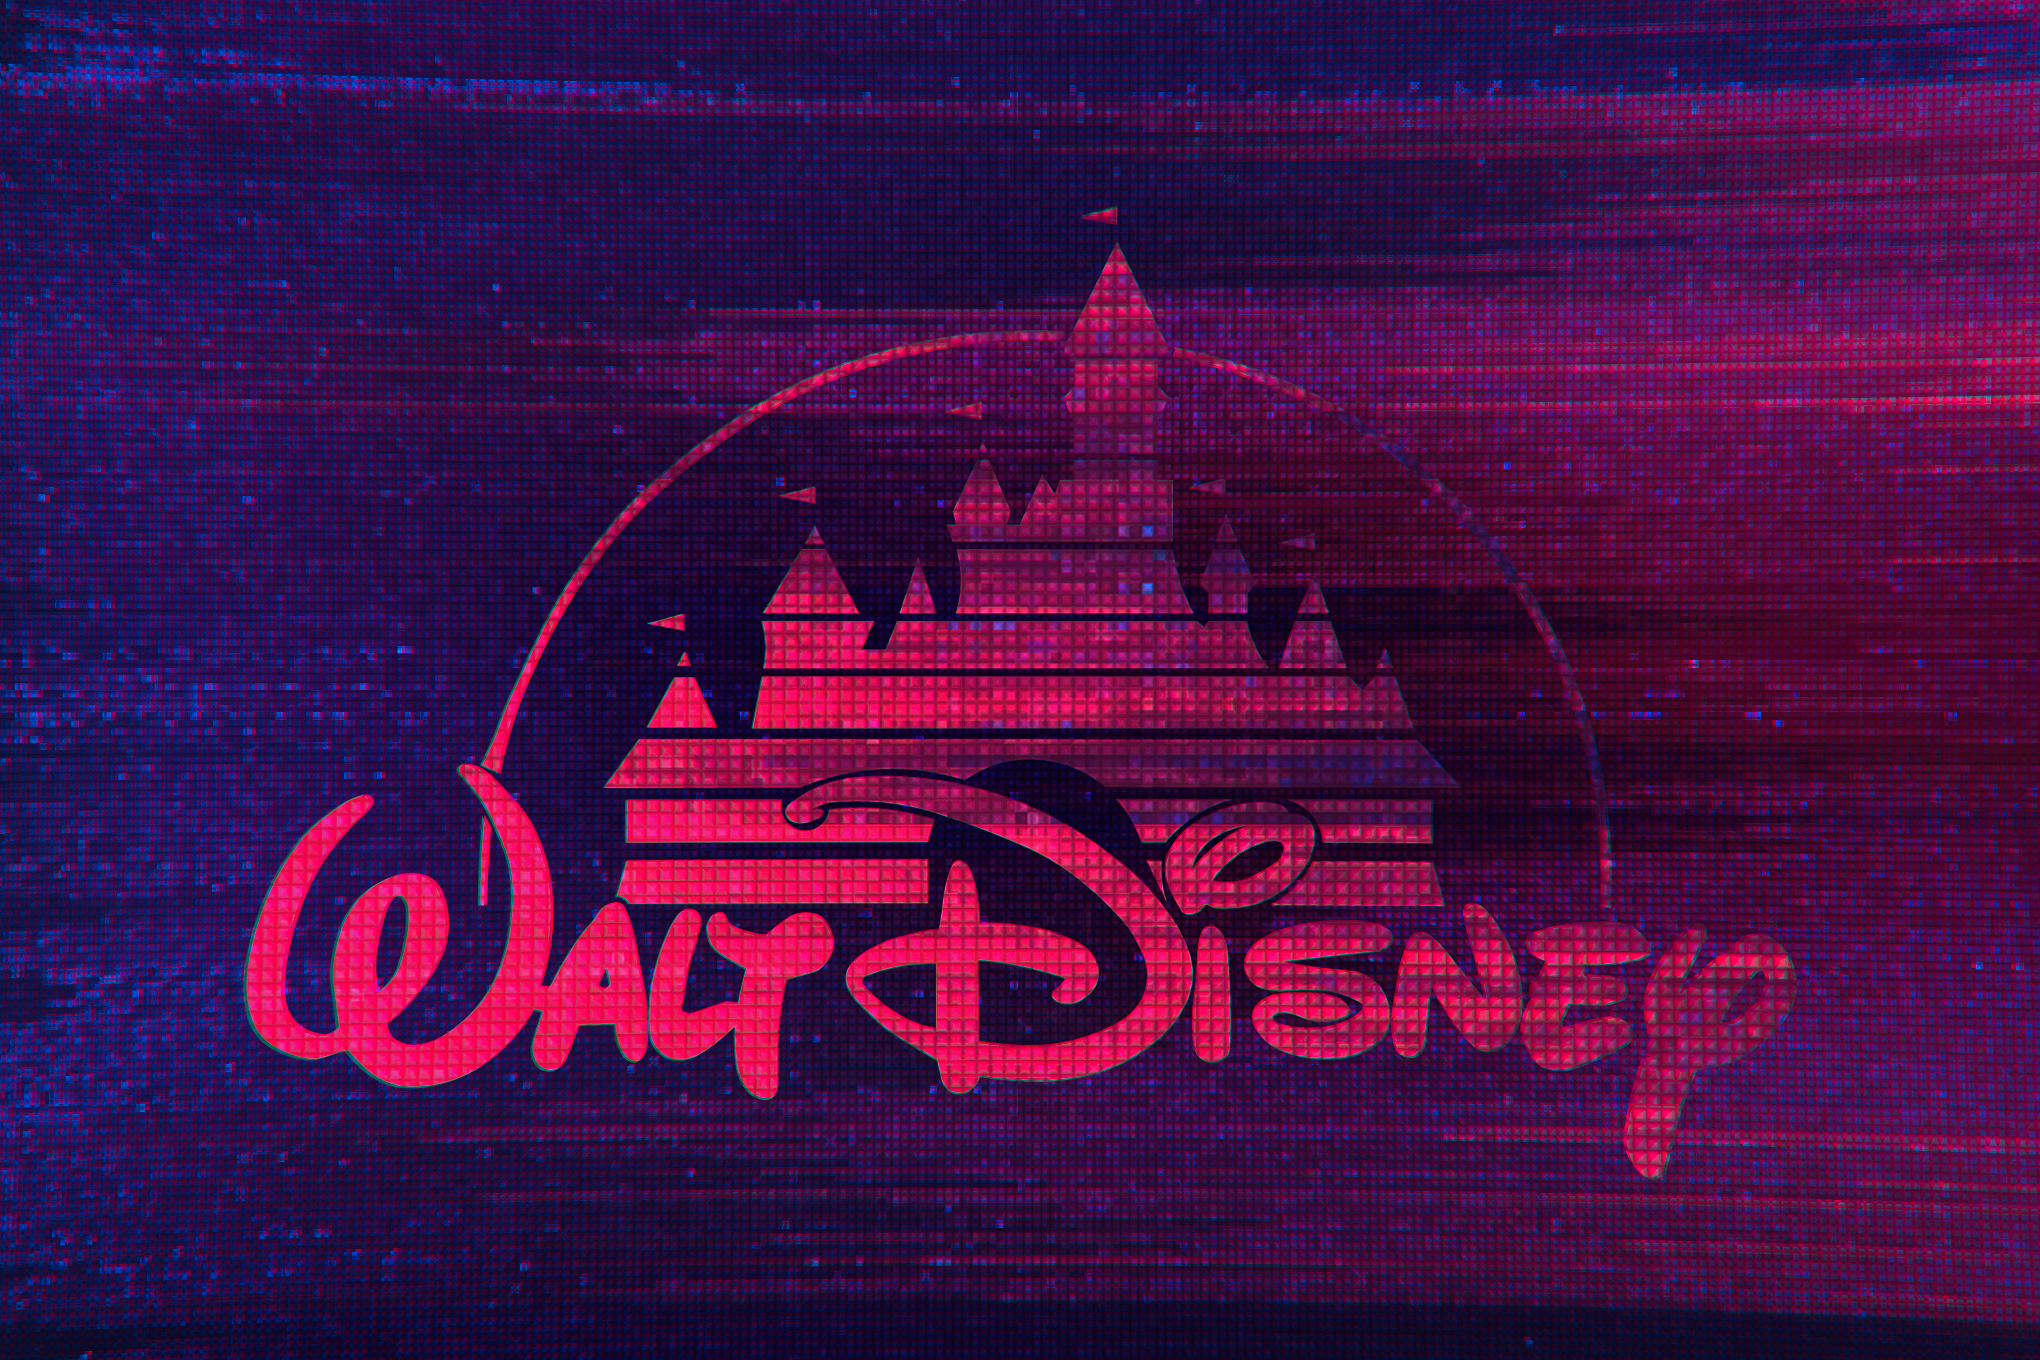 illustration featuring glitchy digital Disney logo